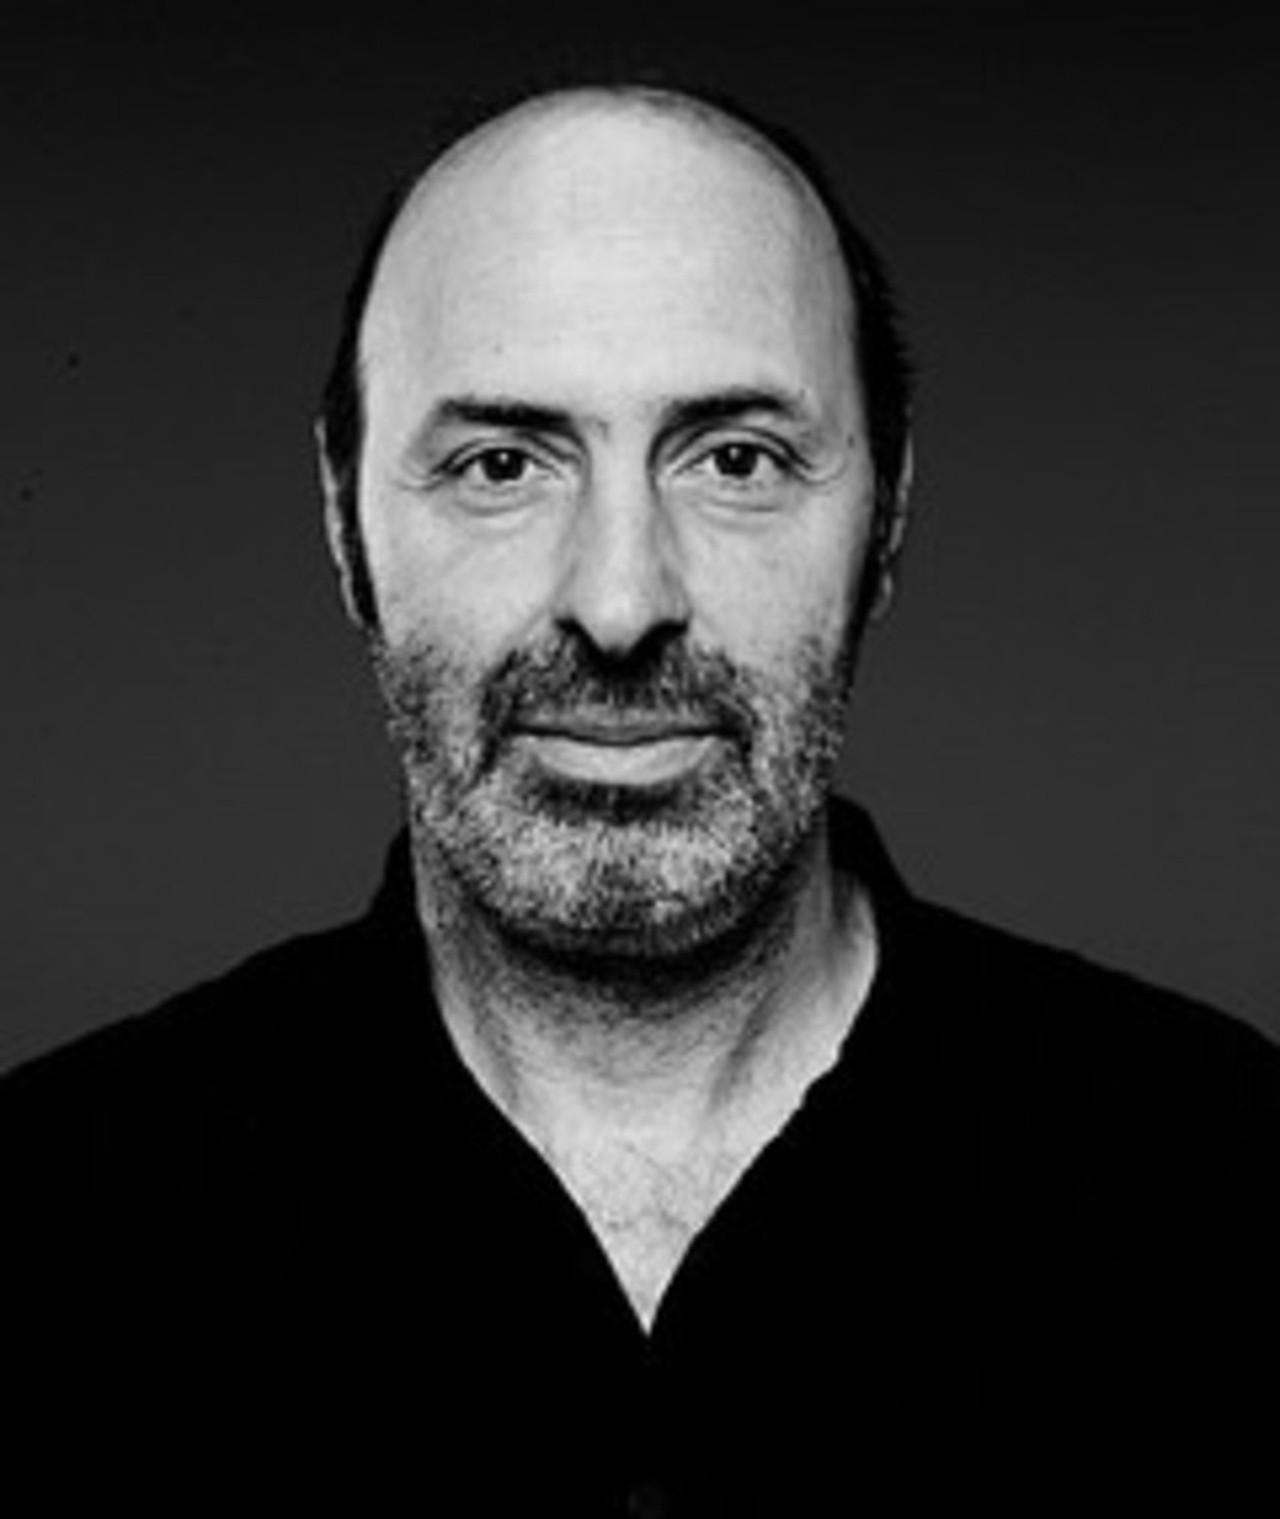 Photo of Cédric Klapisch